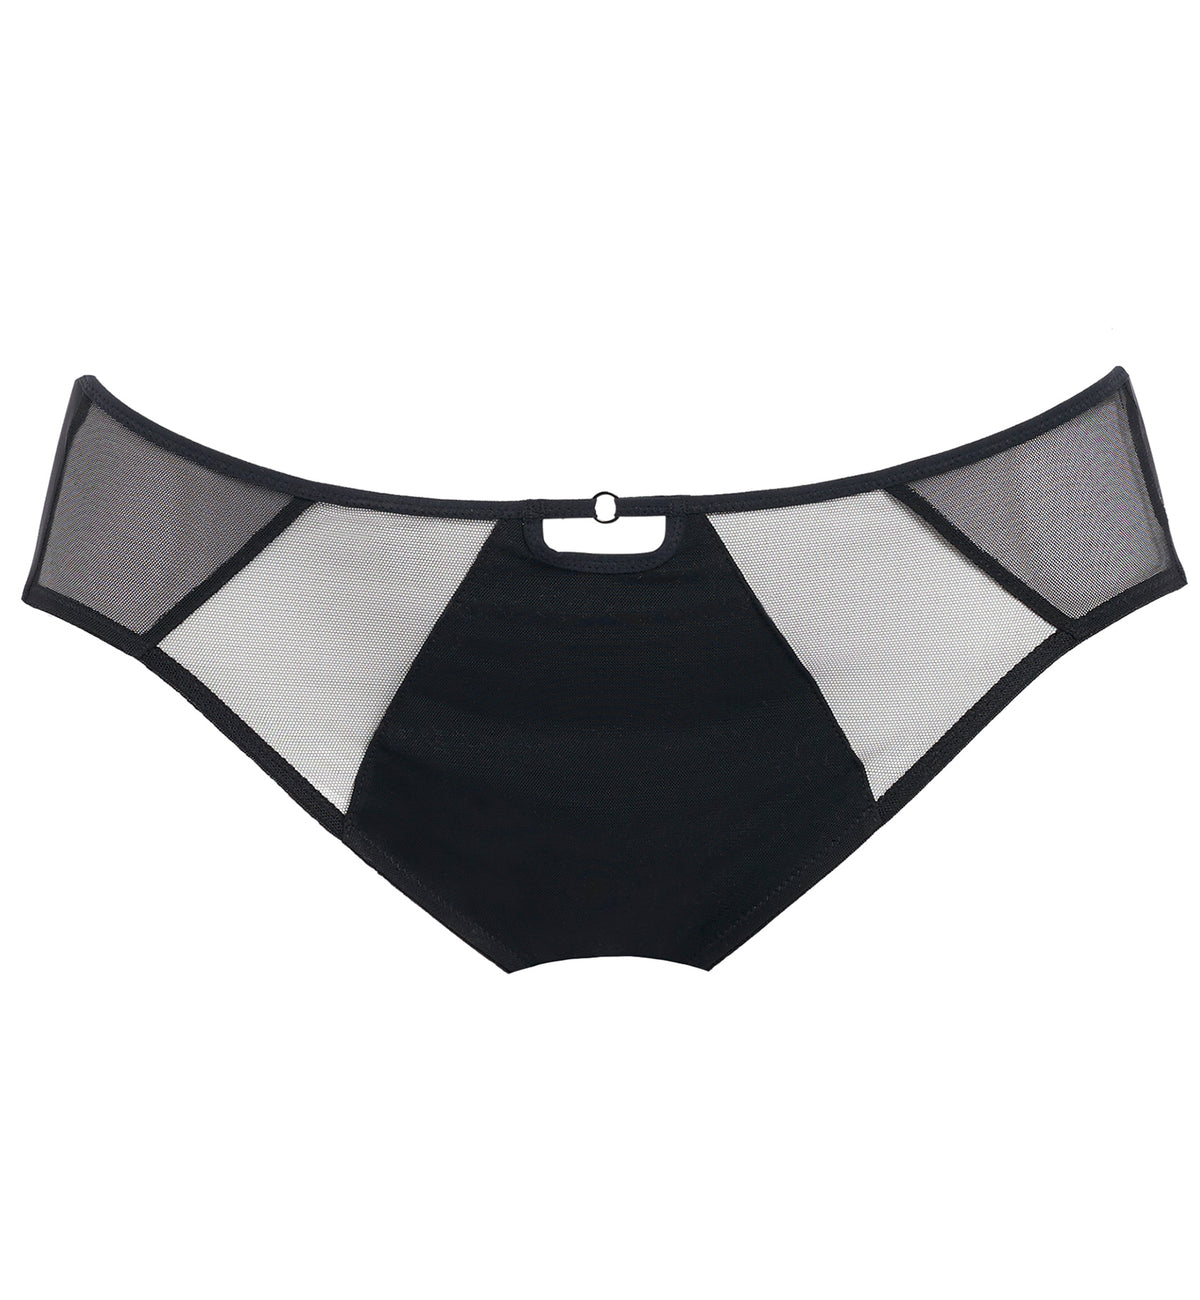 Elomi Sachi Matching Panty Brief (4355),Large,Black - Black,Large